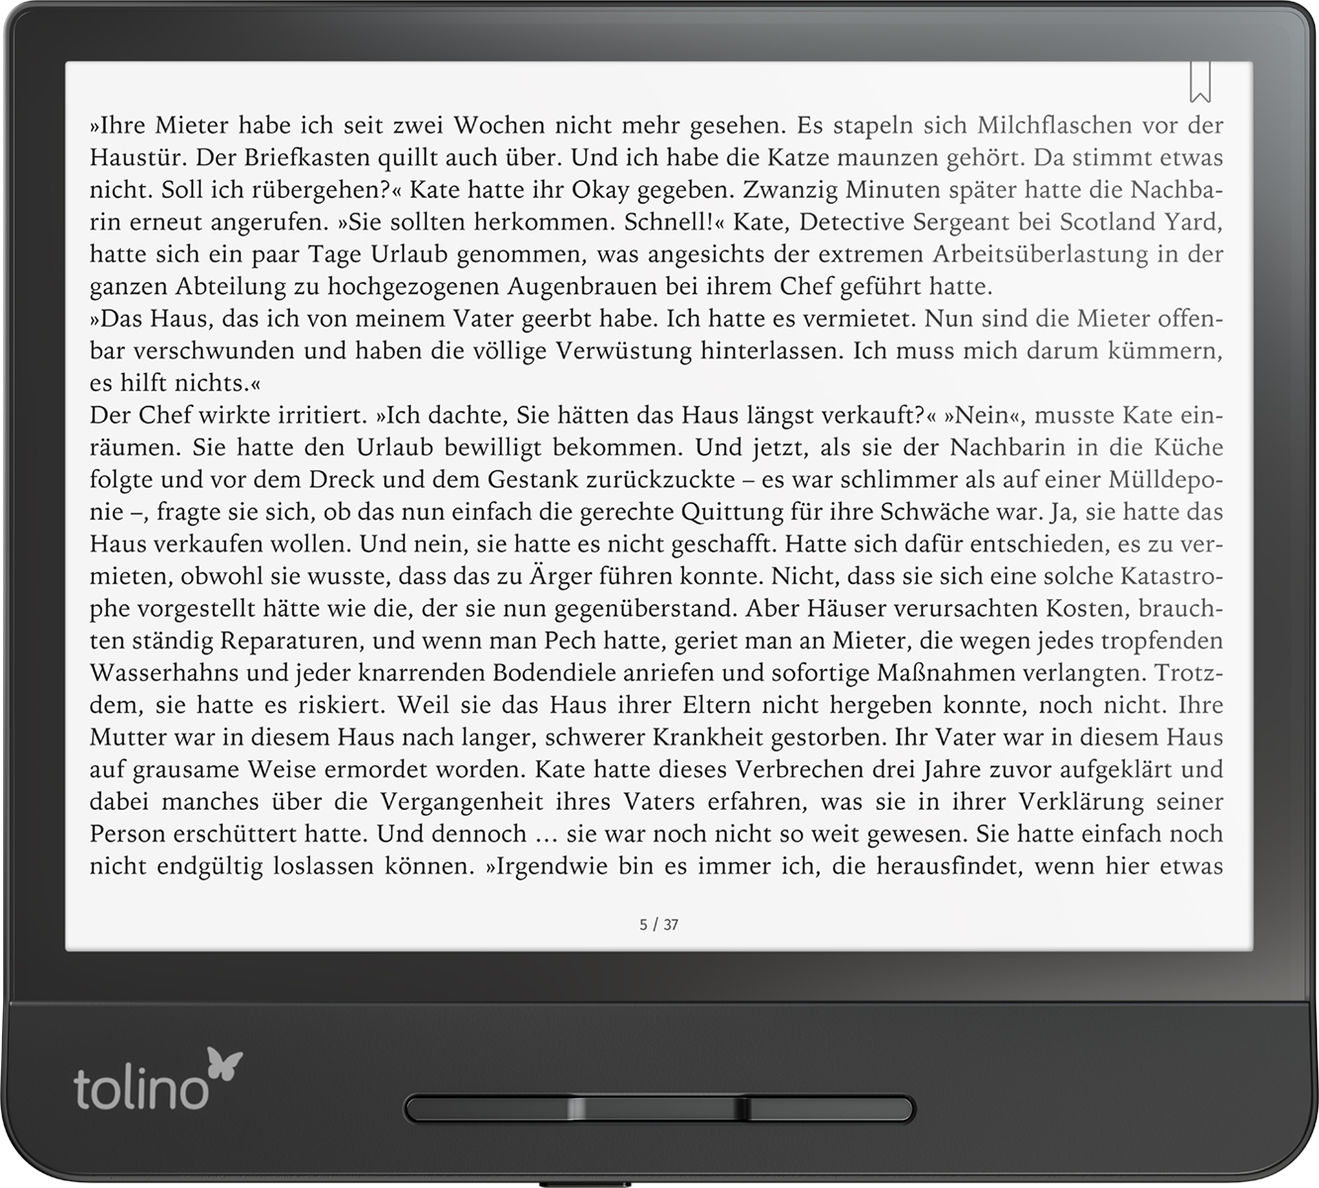 Tolino Epos 2 Ebook Reader Jetzt Bei Weltbild De Bestellen